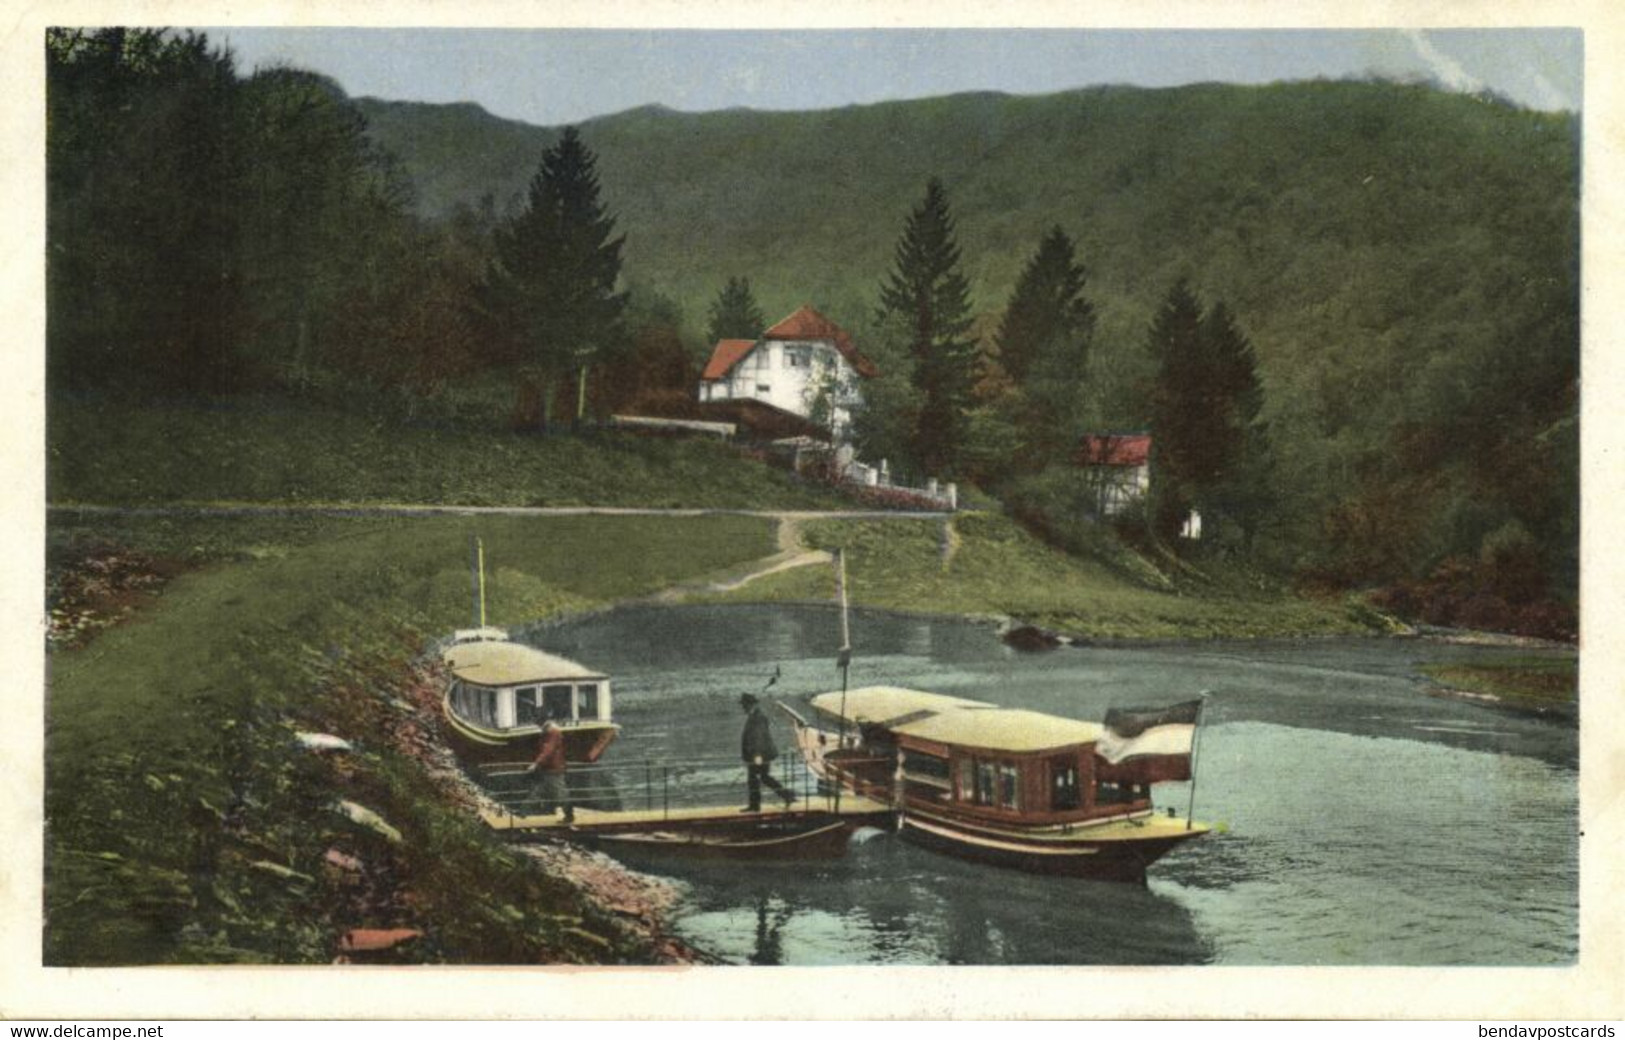 Gemünd, Eifel, Urfttalsperre, Waldhotel, Motorboot-Abfahrtstelle (1920s) AK (1) - Schleiden